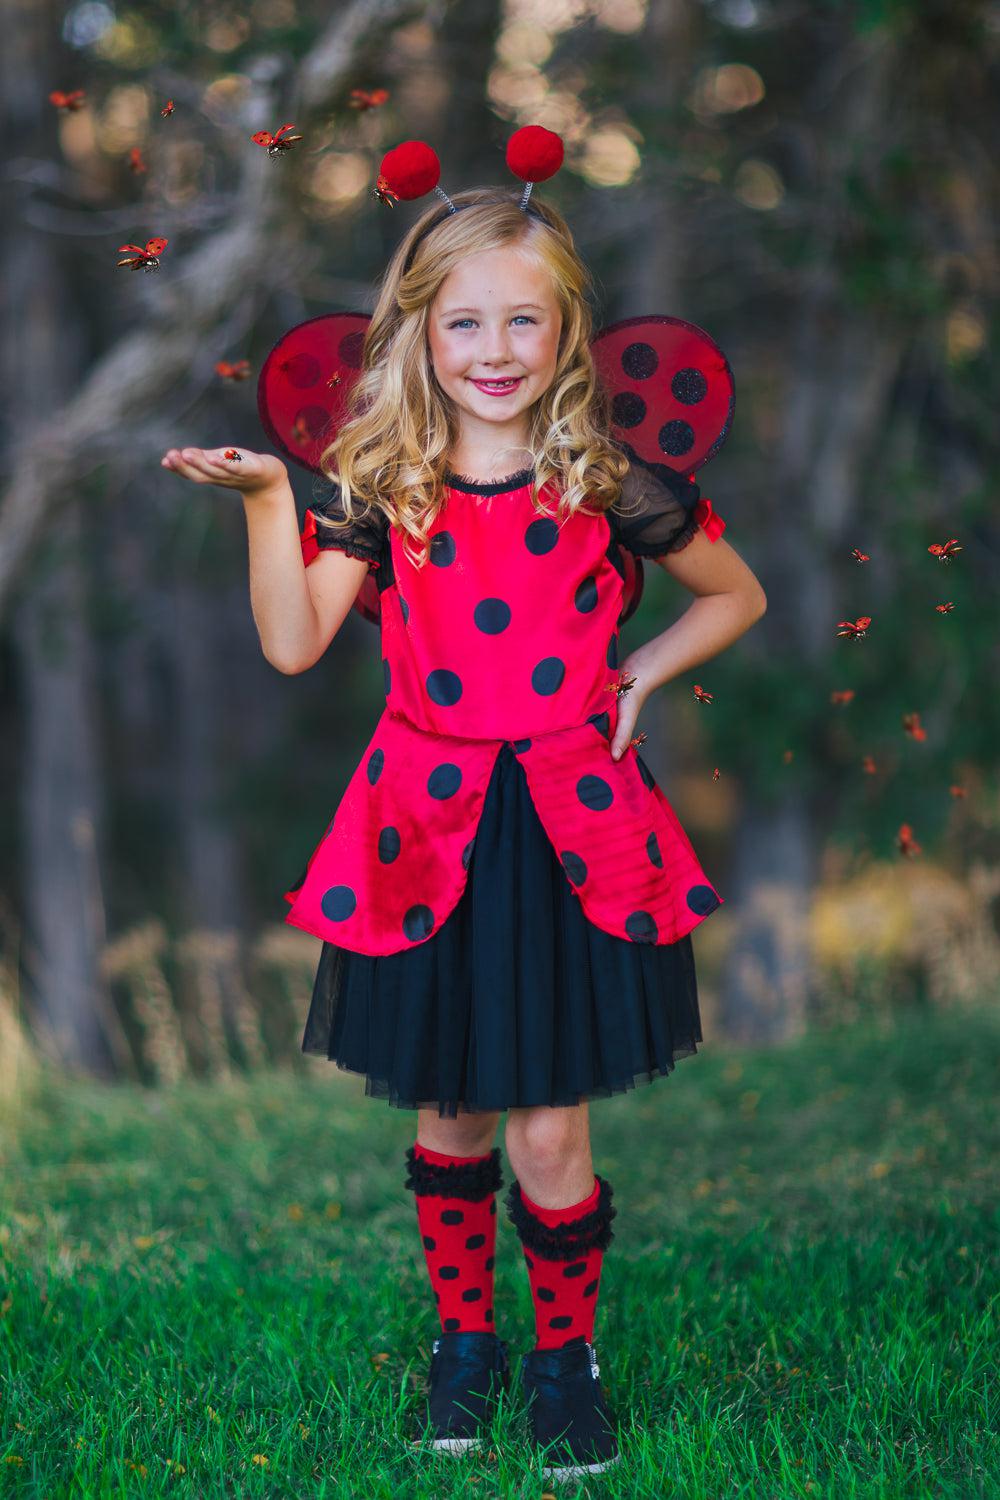 Ladybug kids costume 4-6